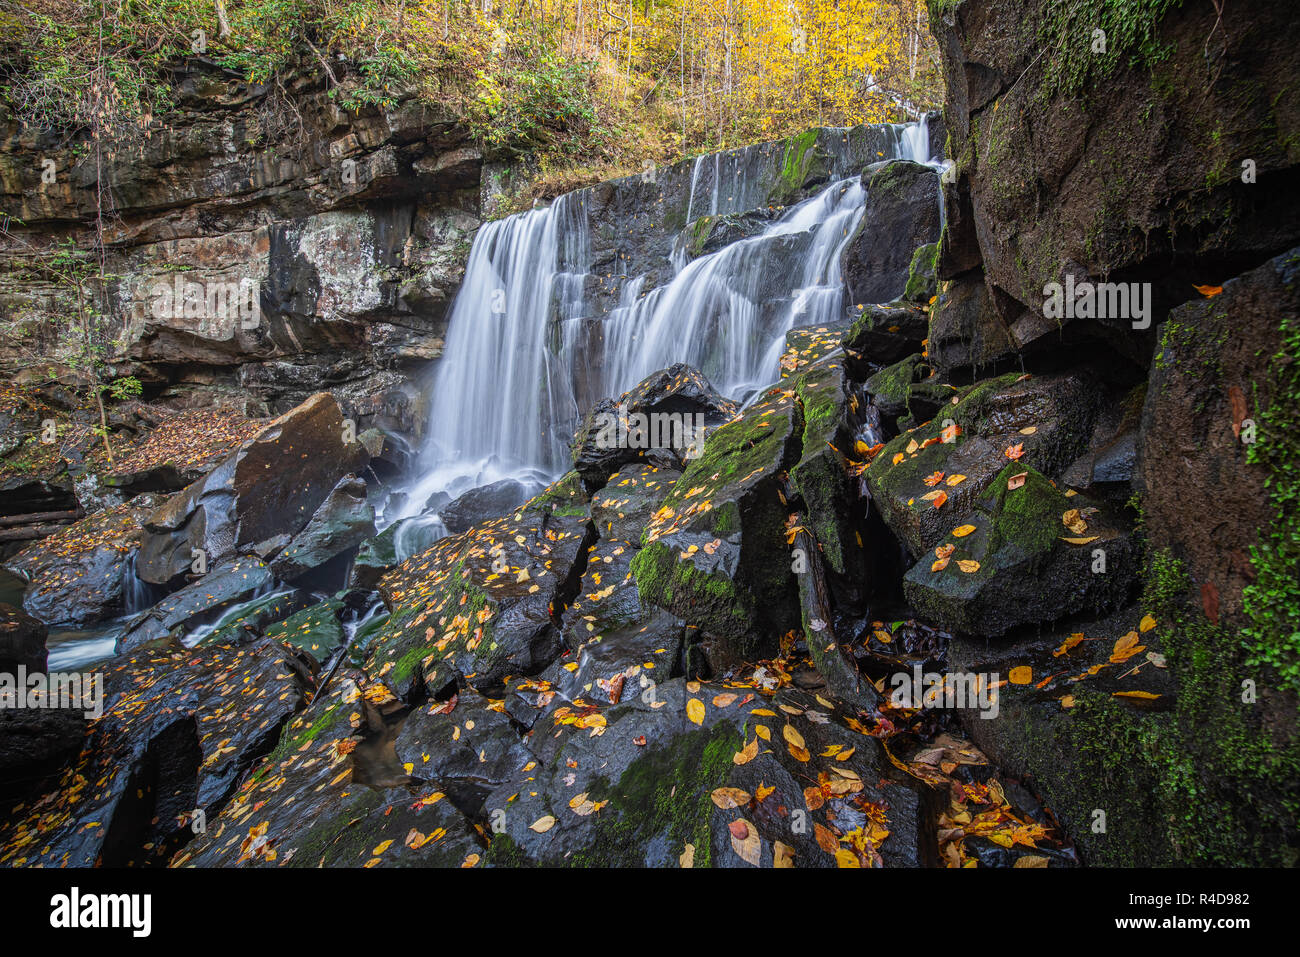 Wolf Creek Falls dans la New River Gorge de la Virginie de l'Ouest est encadrée par des rochers et des arbres ornés de feuillage d'automne jaune coloré. Banque D'Images